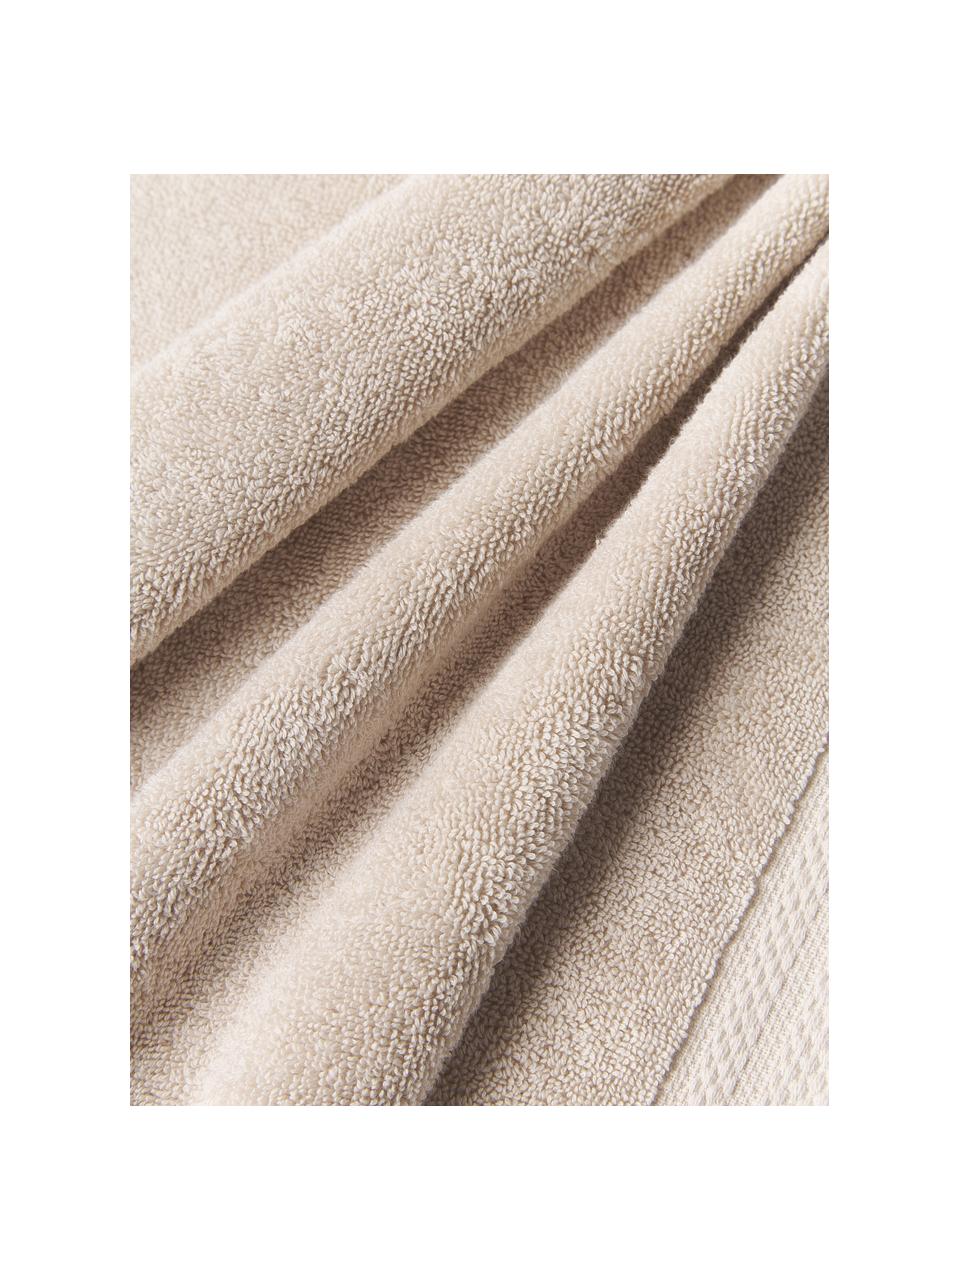 Set asciugamani in cotone organico Premium, varie misure, 100% cotone organico certificato GOTS (da GCL International, GCL-300517).
Qualità pesante, 600 g/m², Beige chiaro, Set da 3 (asciugamano ospite, asciugamano e telo bagno)